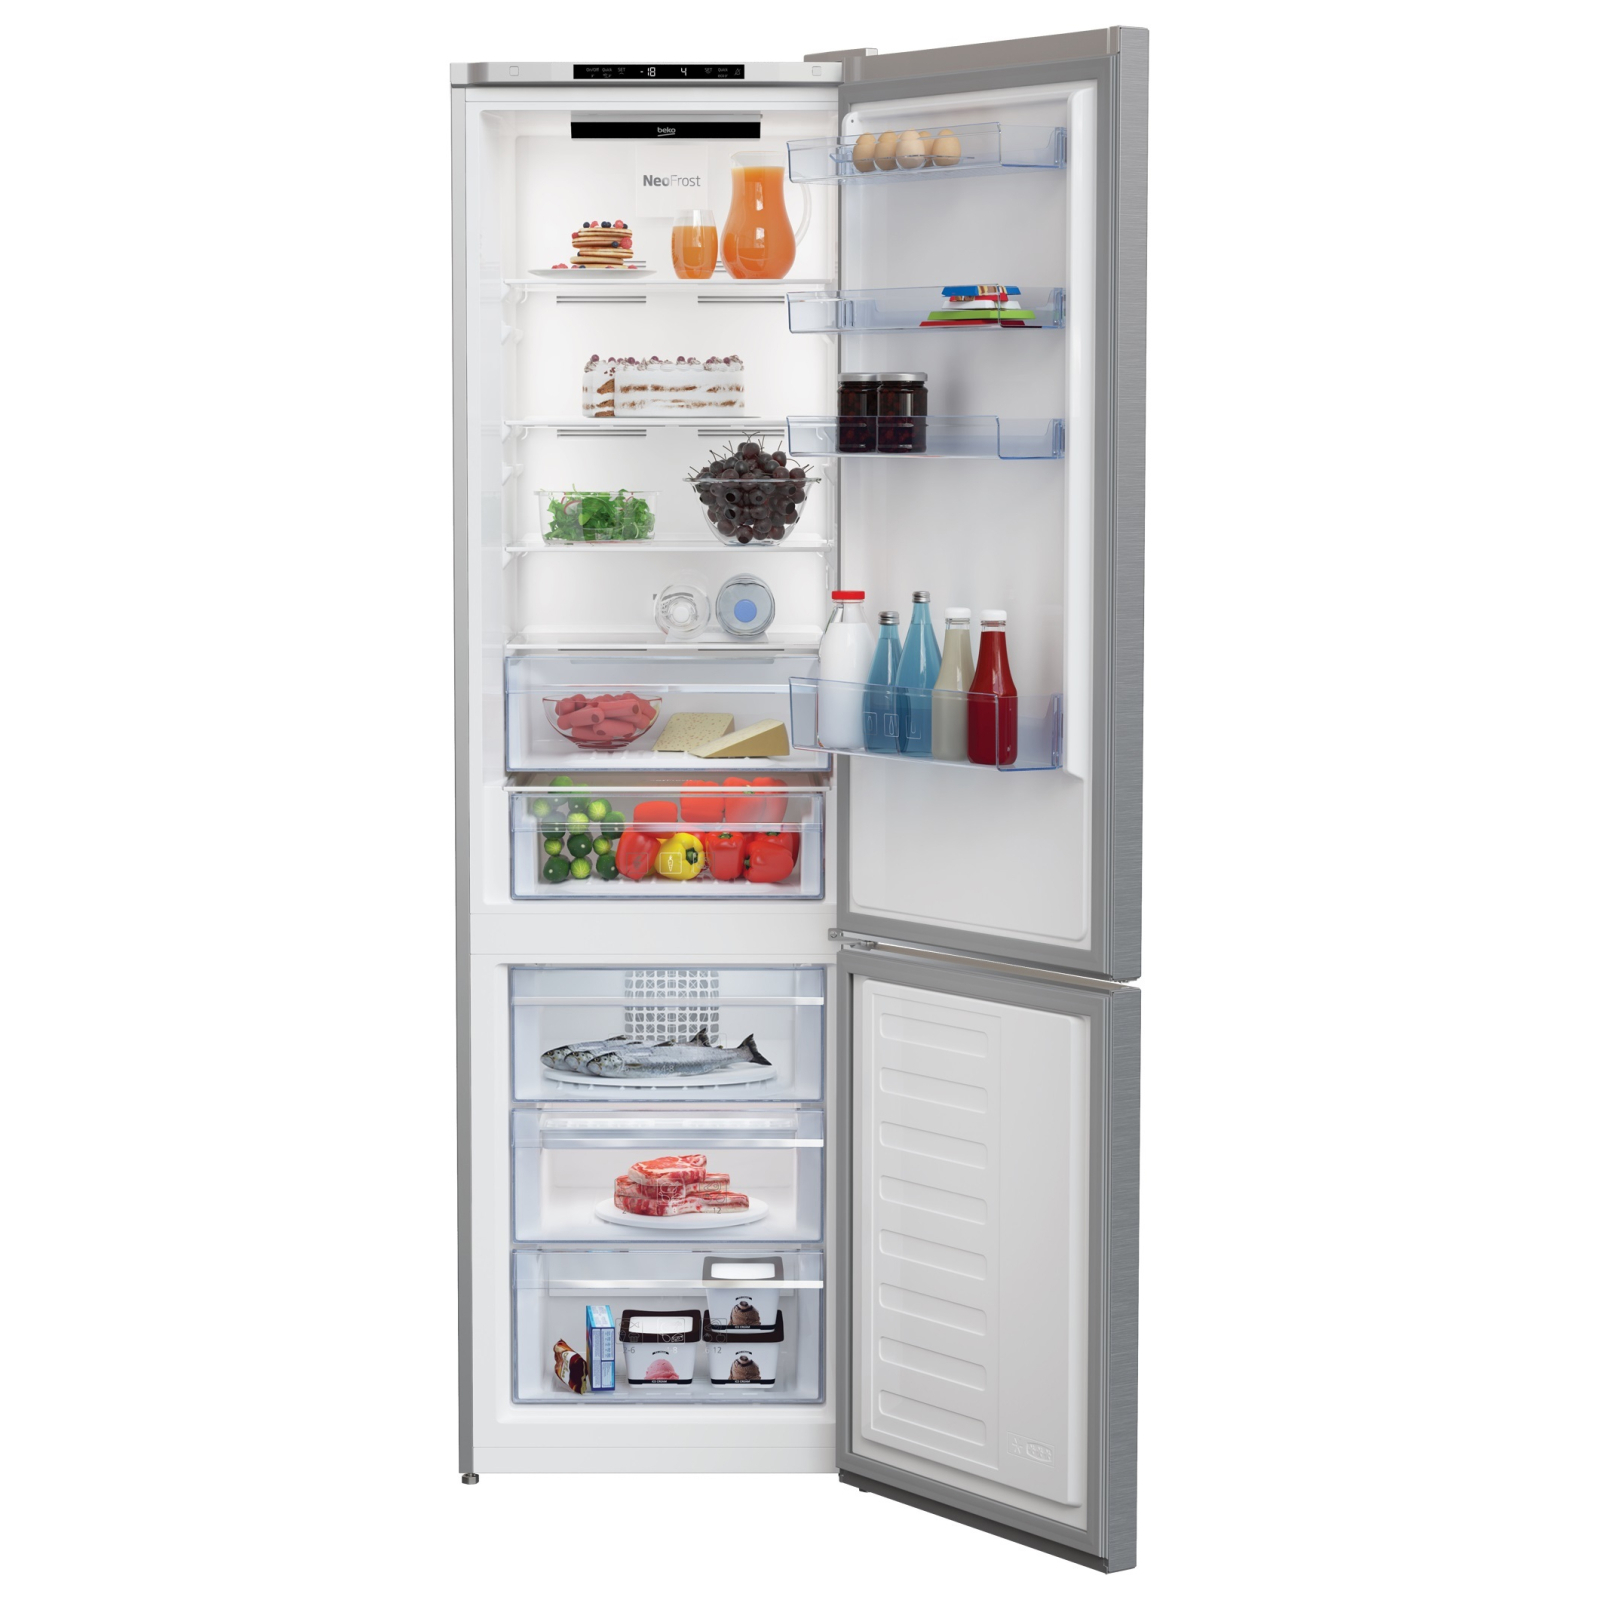 Холодильник Beko RCNA406I30XB изображение 3